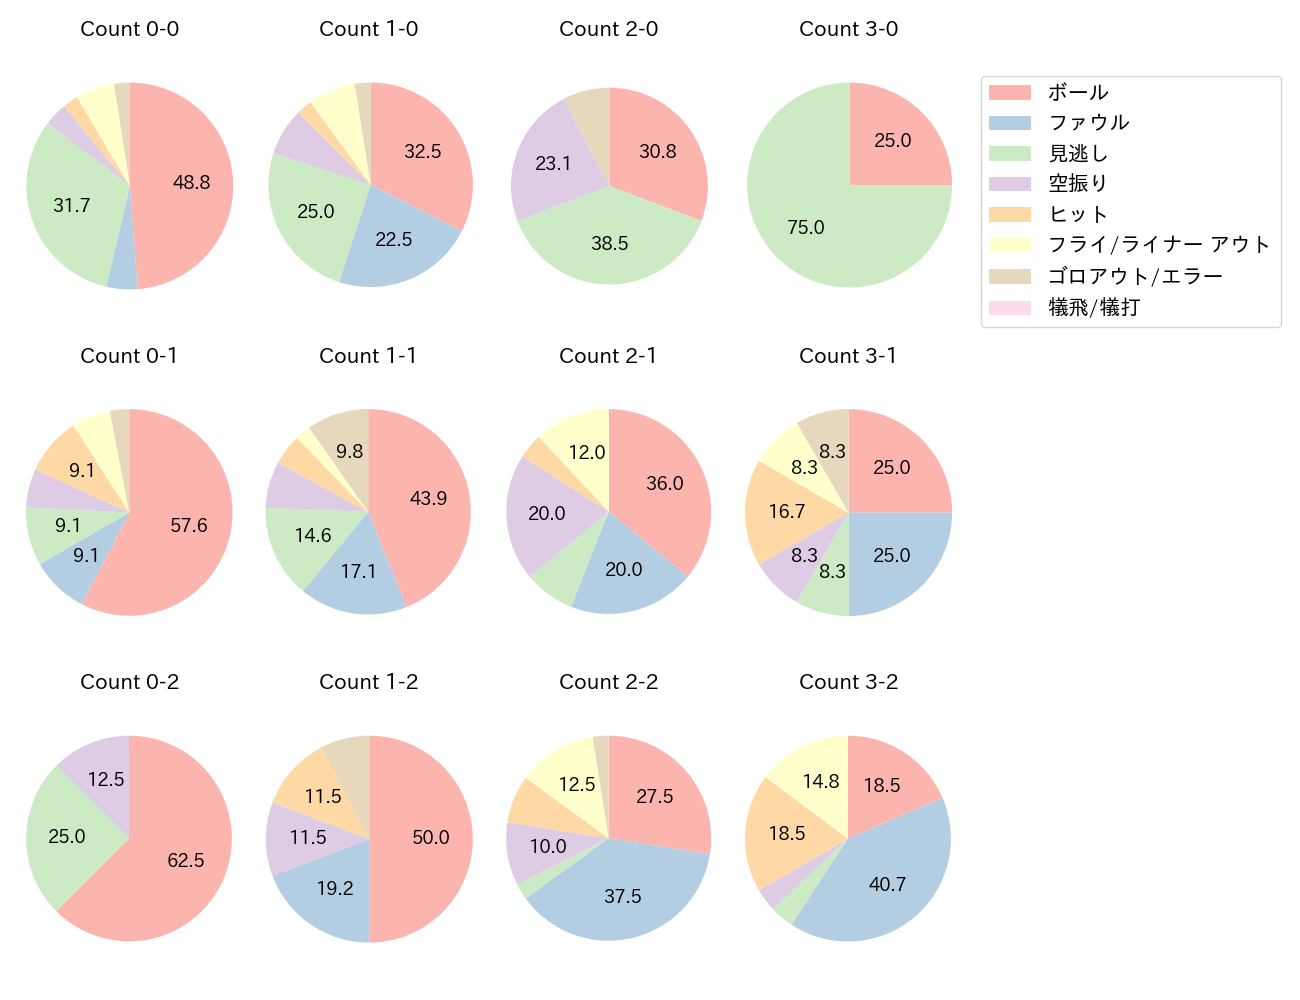 松原 聖弥の球数分布(2021年6月)